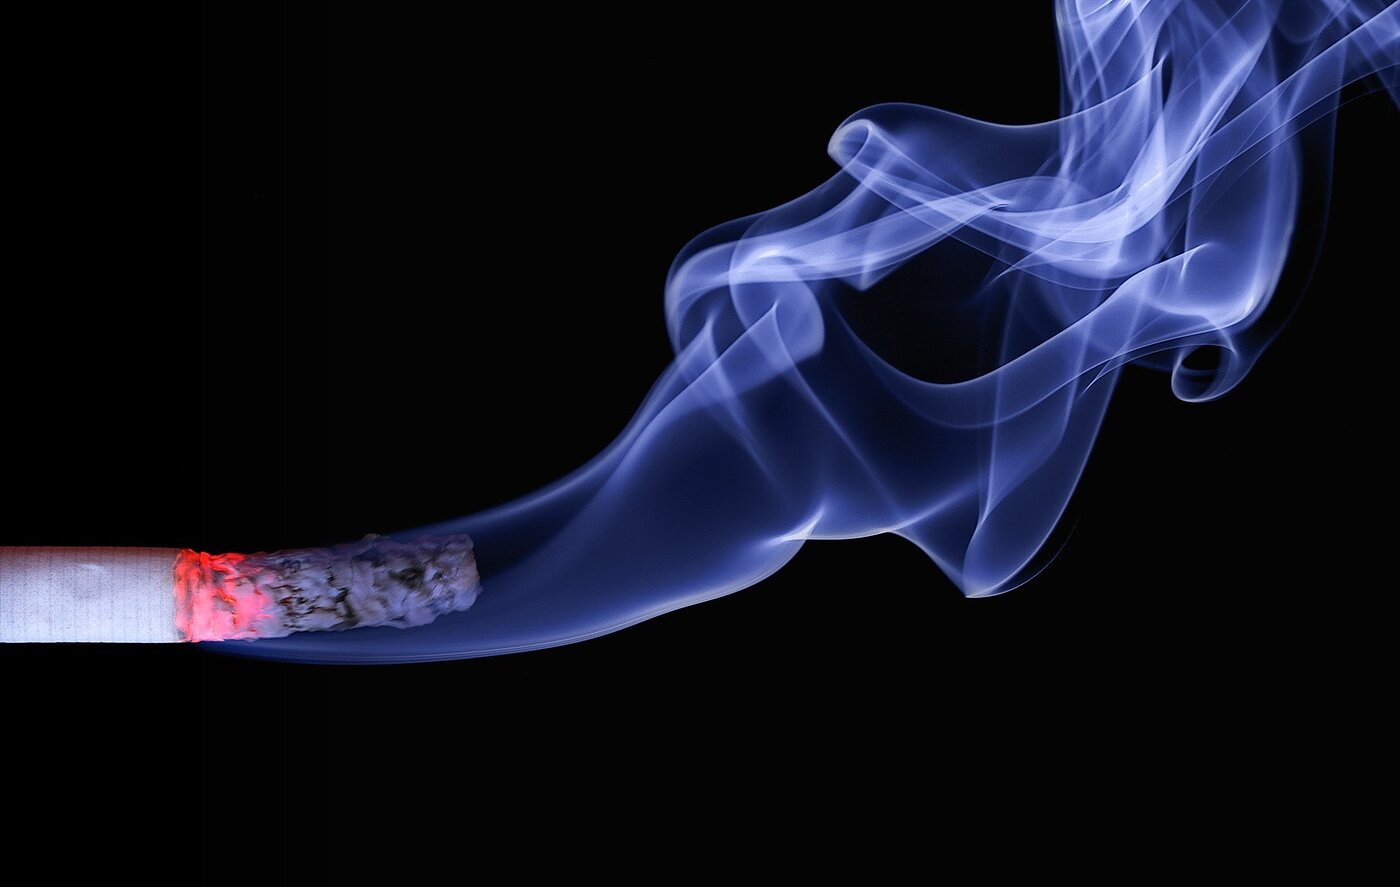 brennende Zigarette vor schwarzem Hintergrund mit blauem Rauch